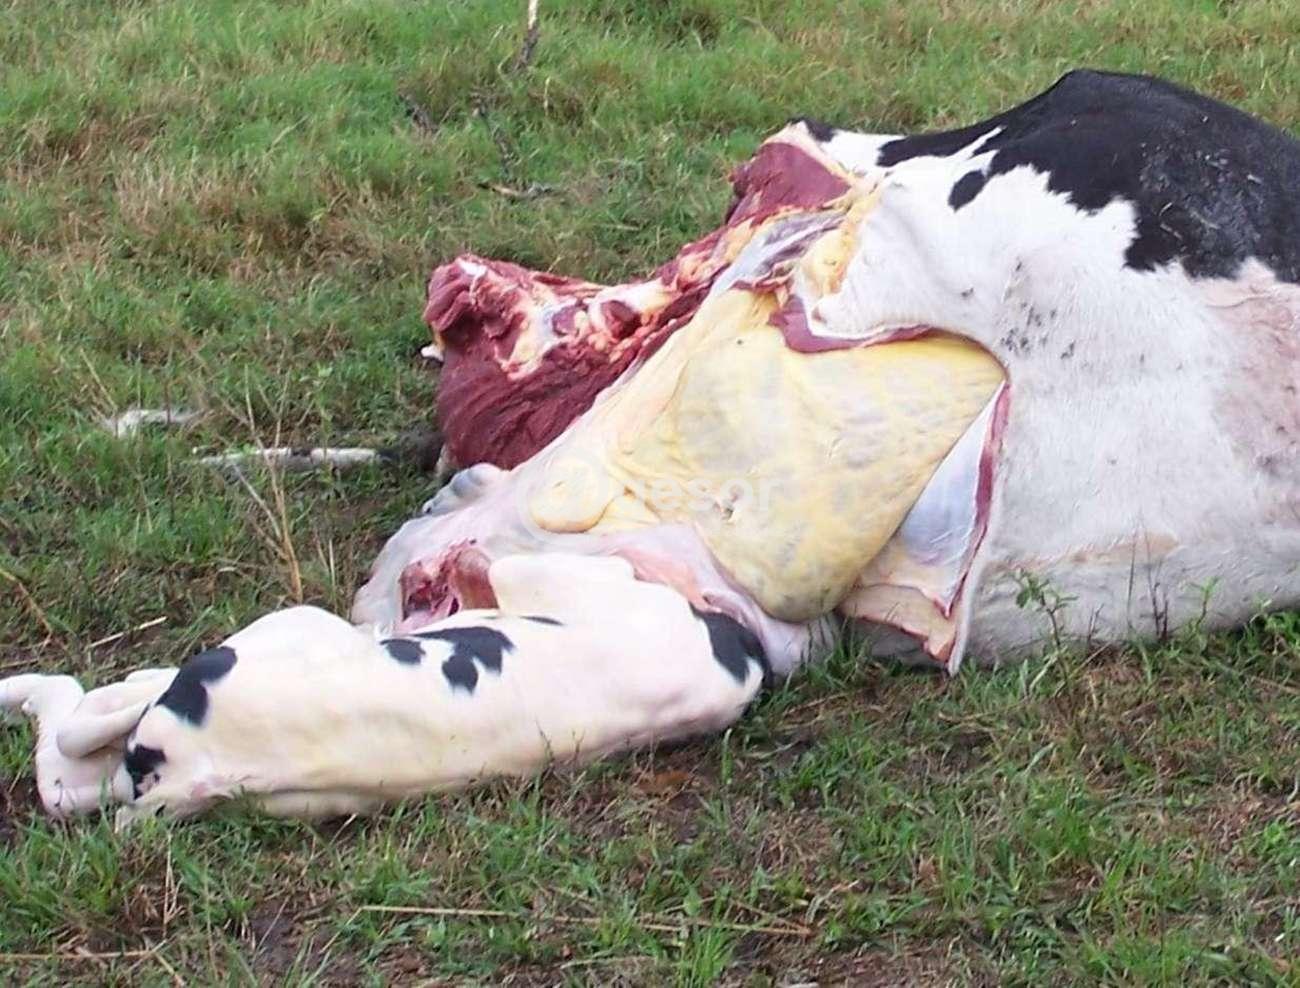 Esta vez fueron muertos tres vacas y un ternero, a uno de ellos lo dejaron en el lugar sin vida